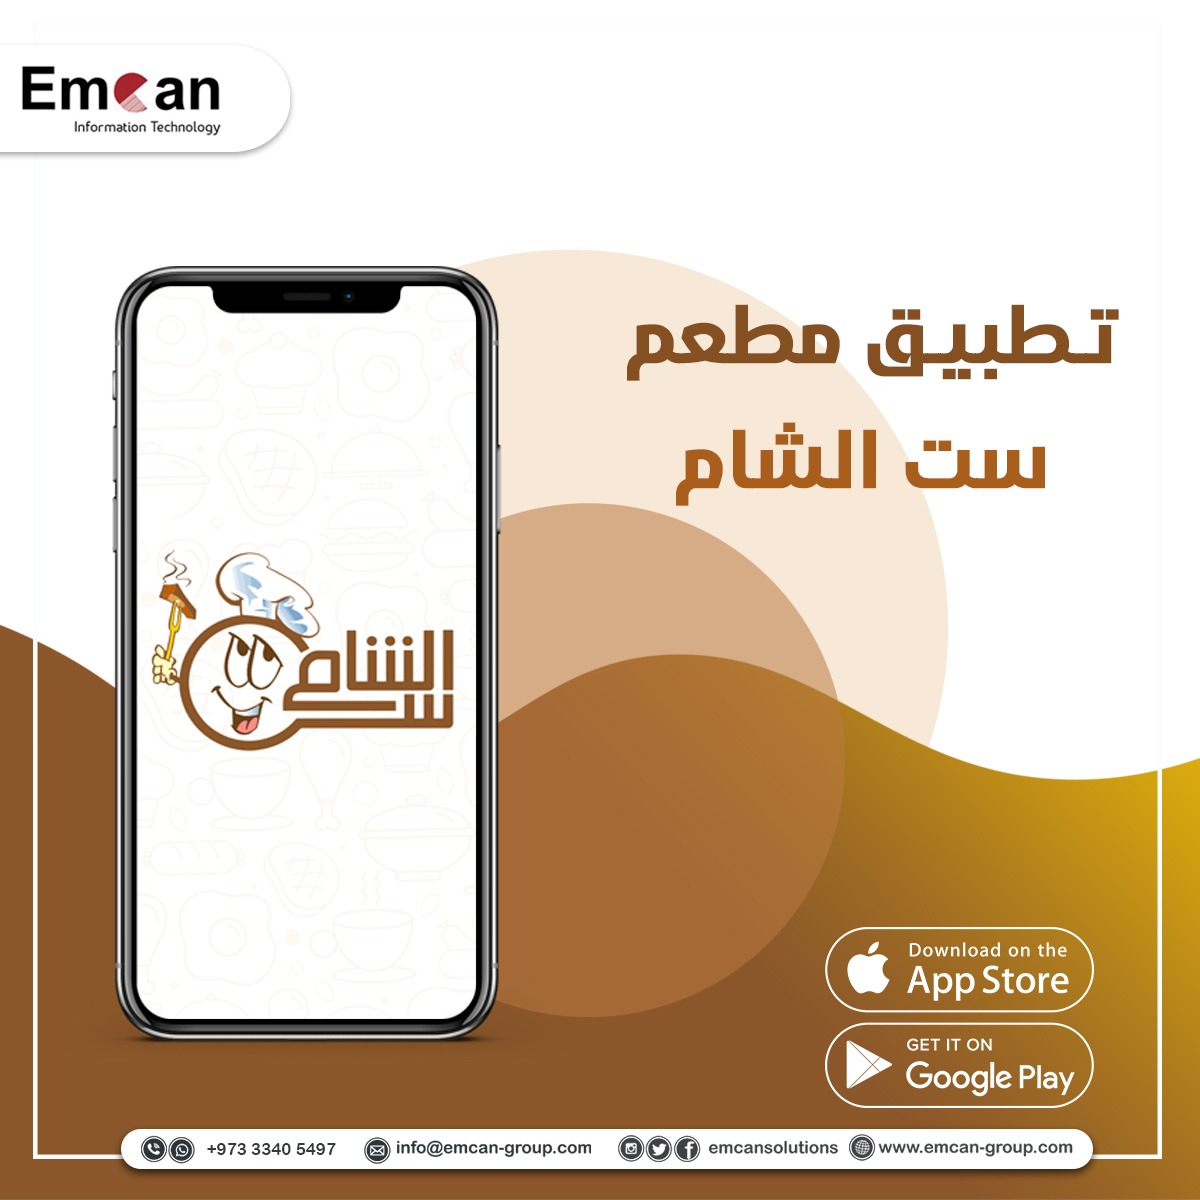 Set Al Sham restaurant app